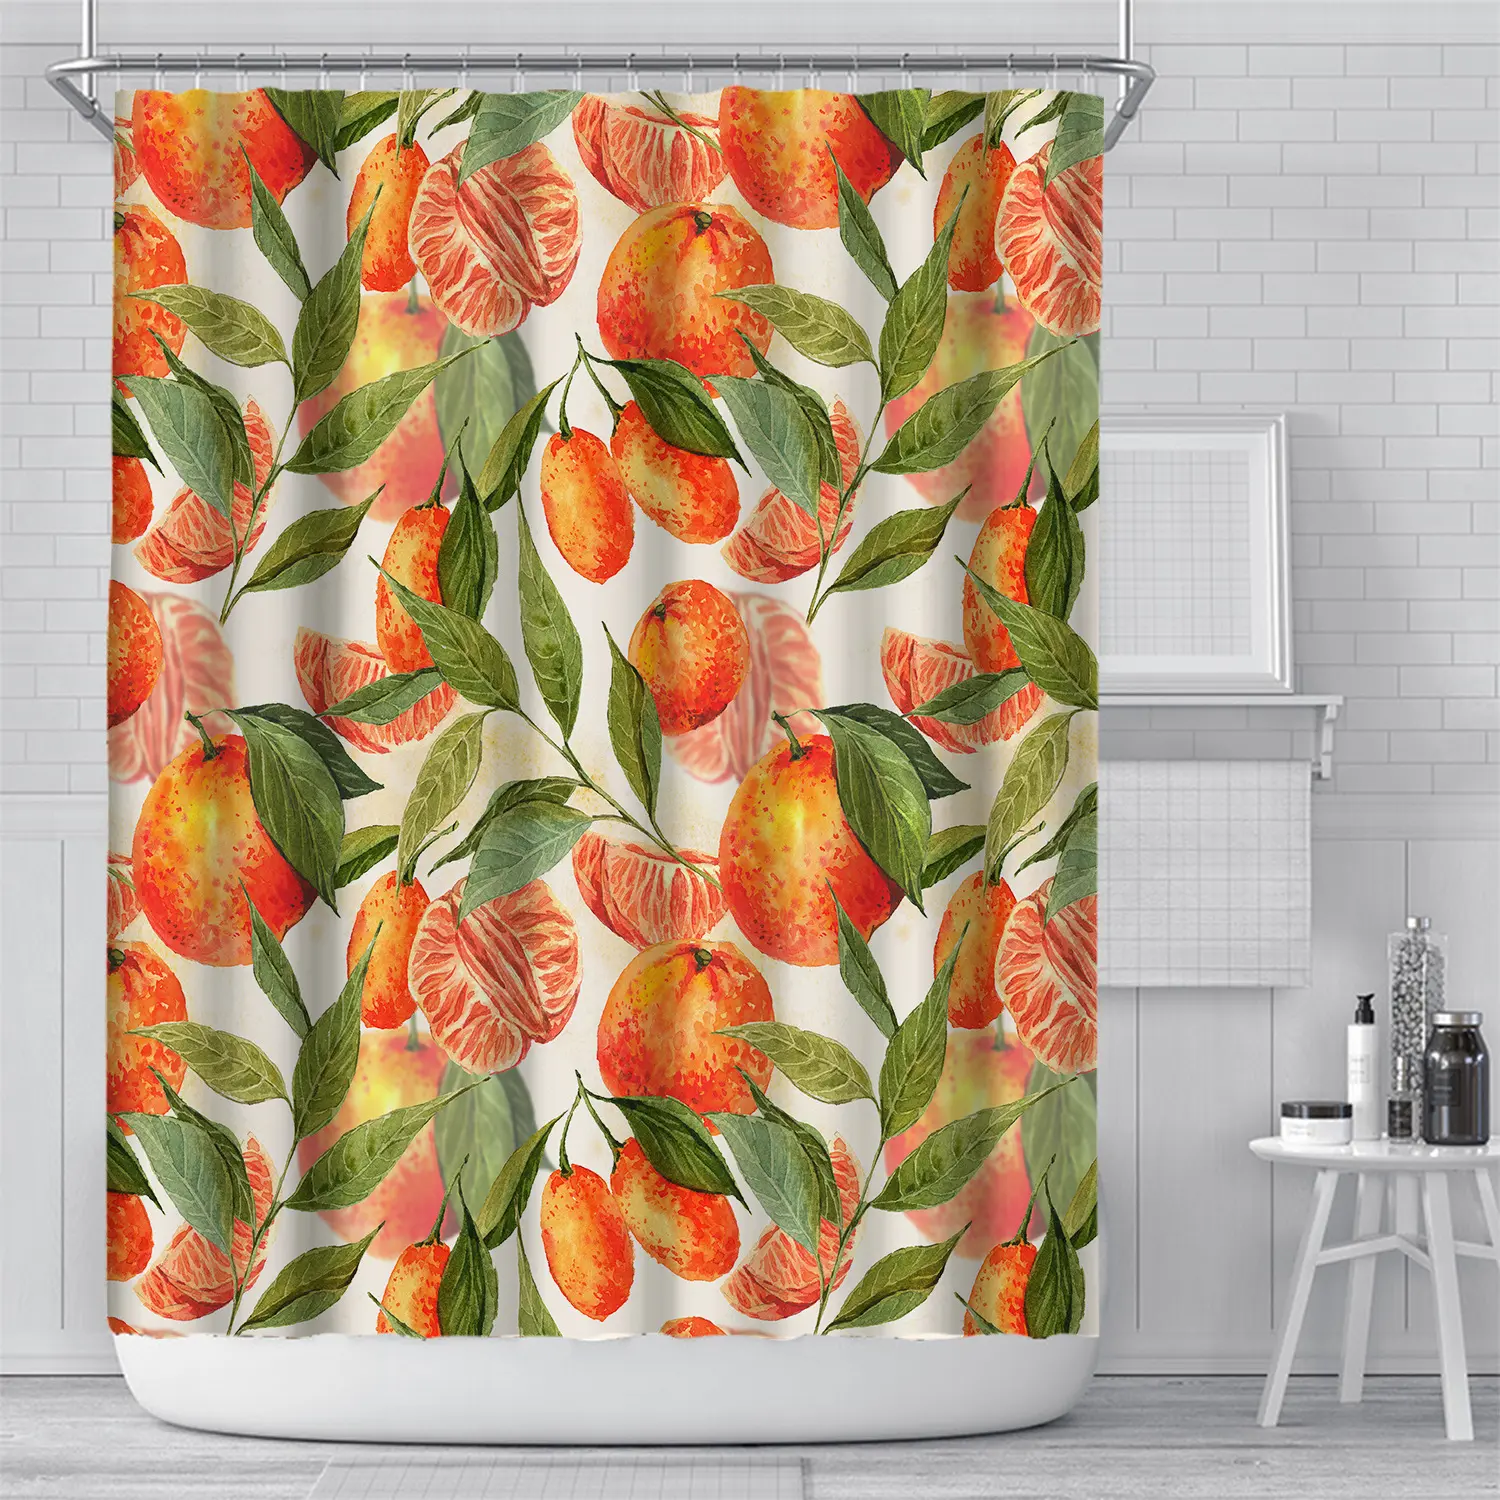 Cortina de ducha con estampado Digital 3D para cuarto de baño, cortina impermeable con diseño de fruta y manzana naranja